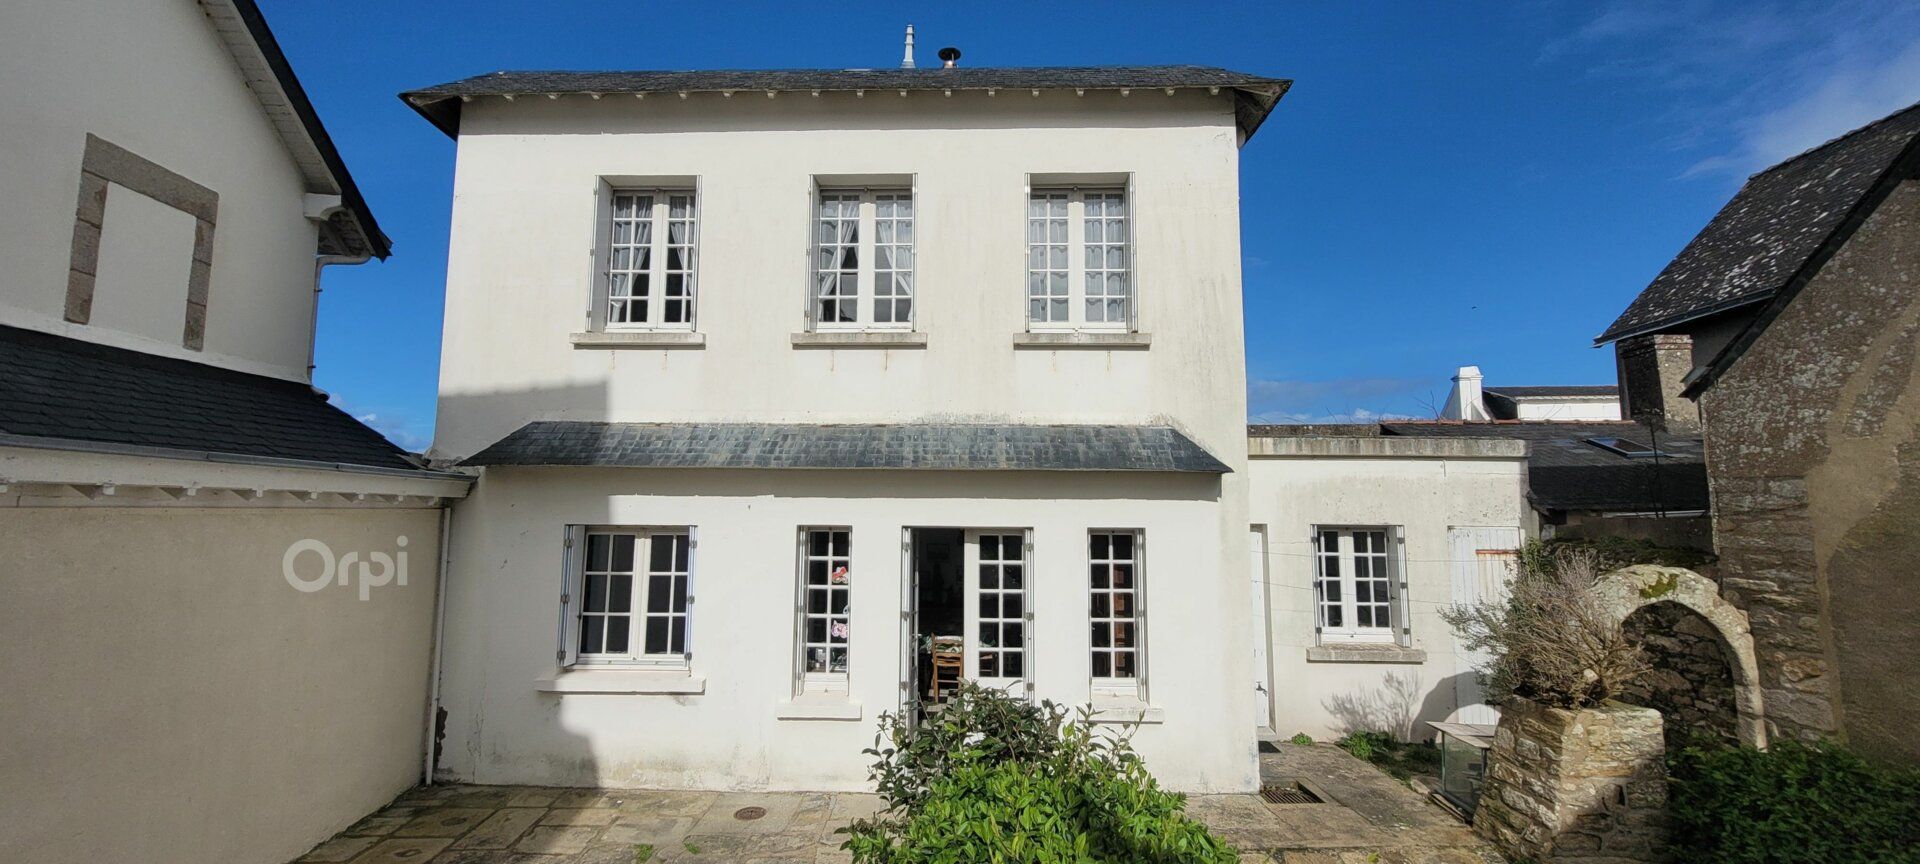 Maison à vendre 4 57.39m2 à Piriac-sur-Mer vignette-3